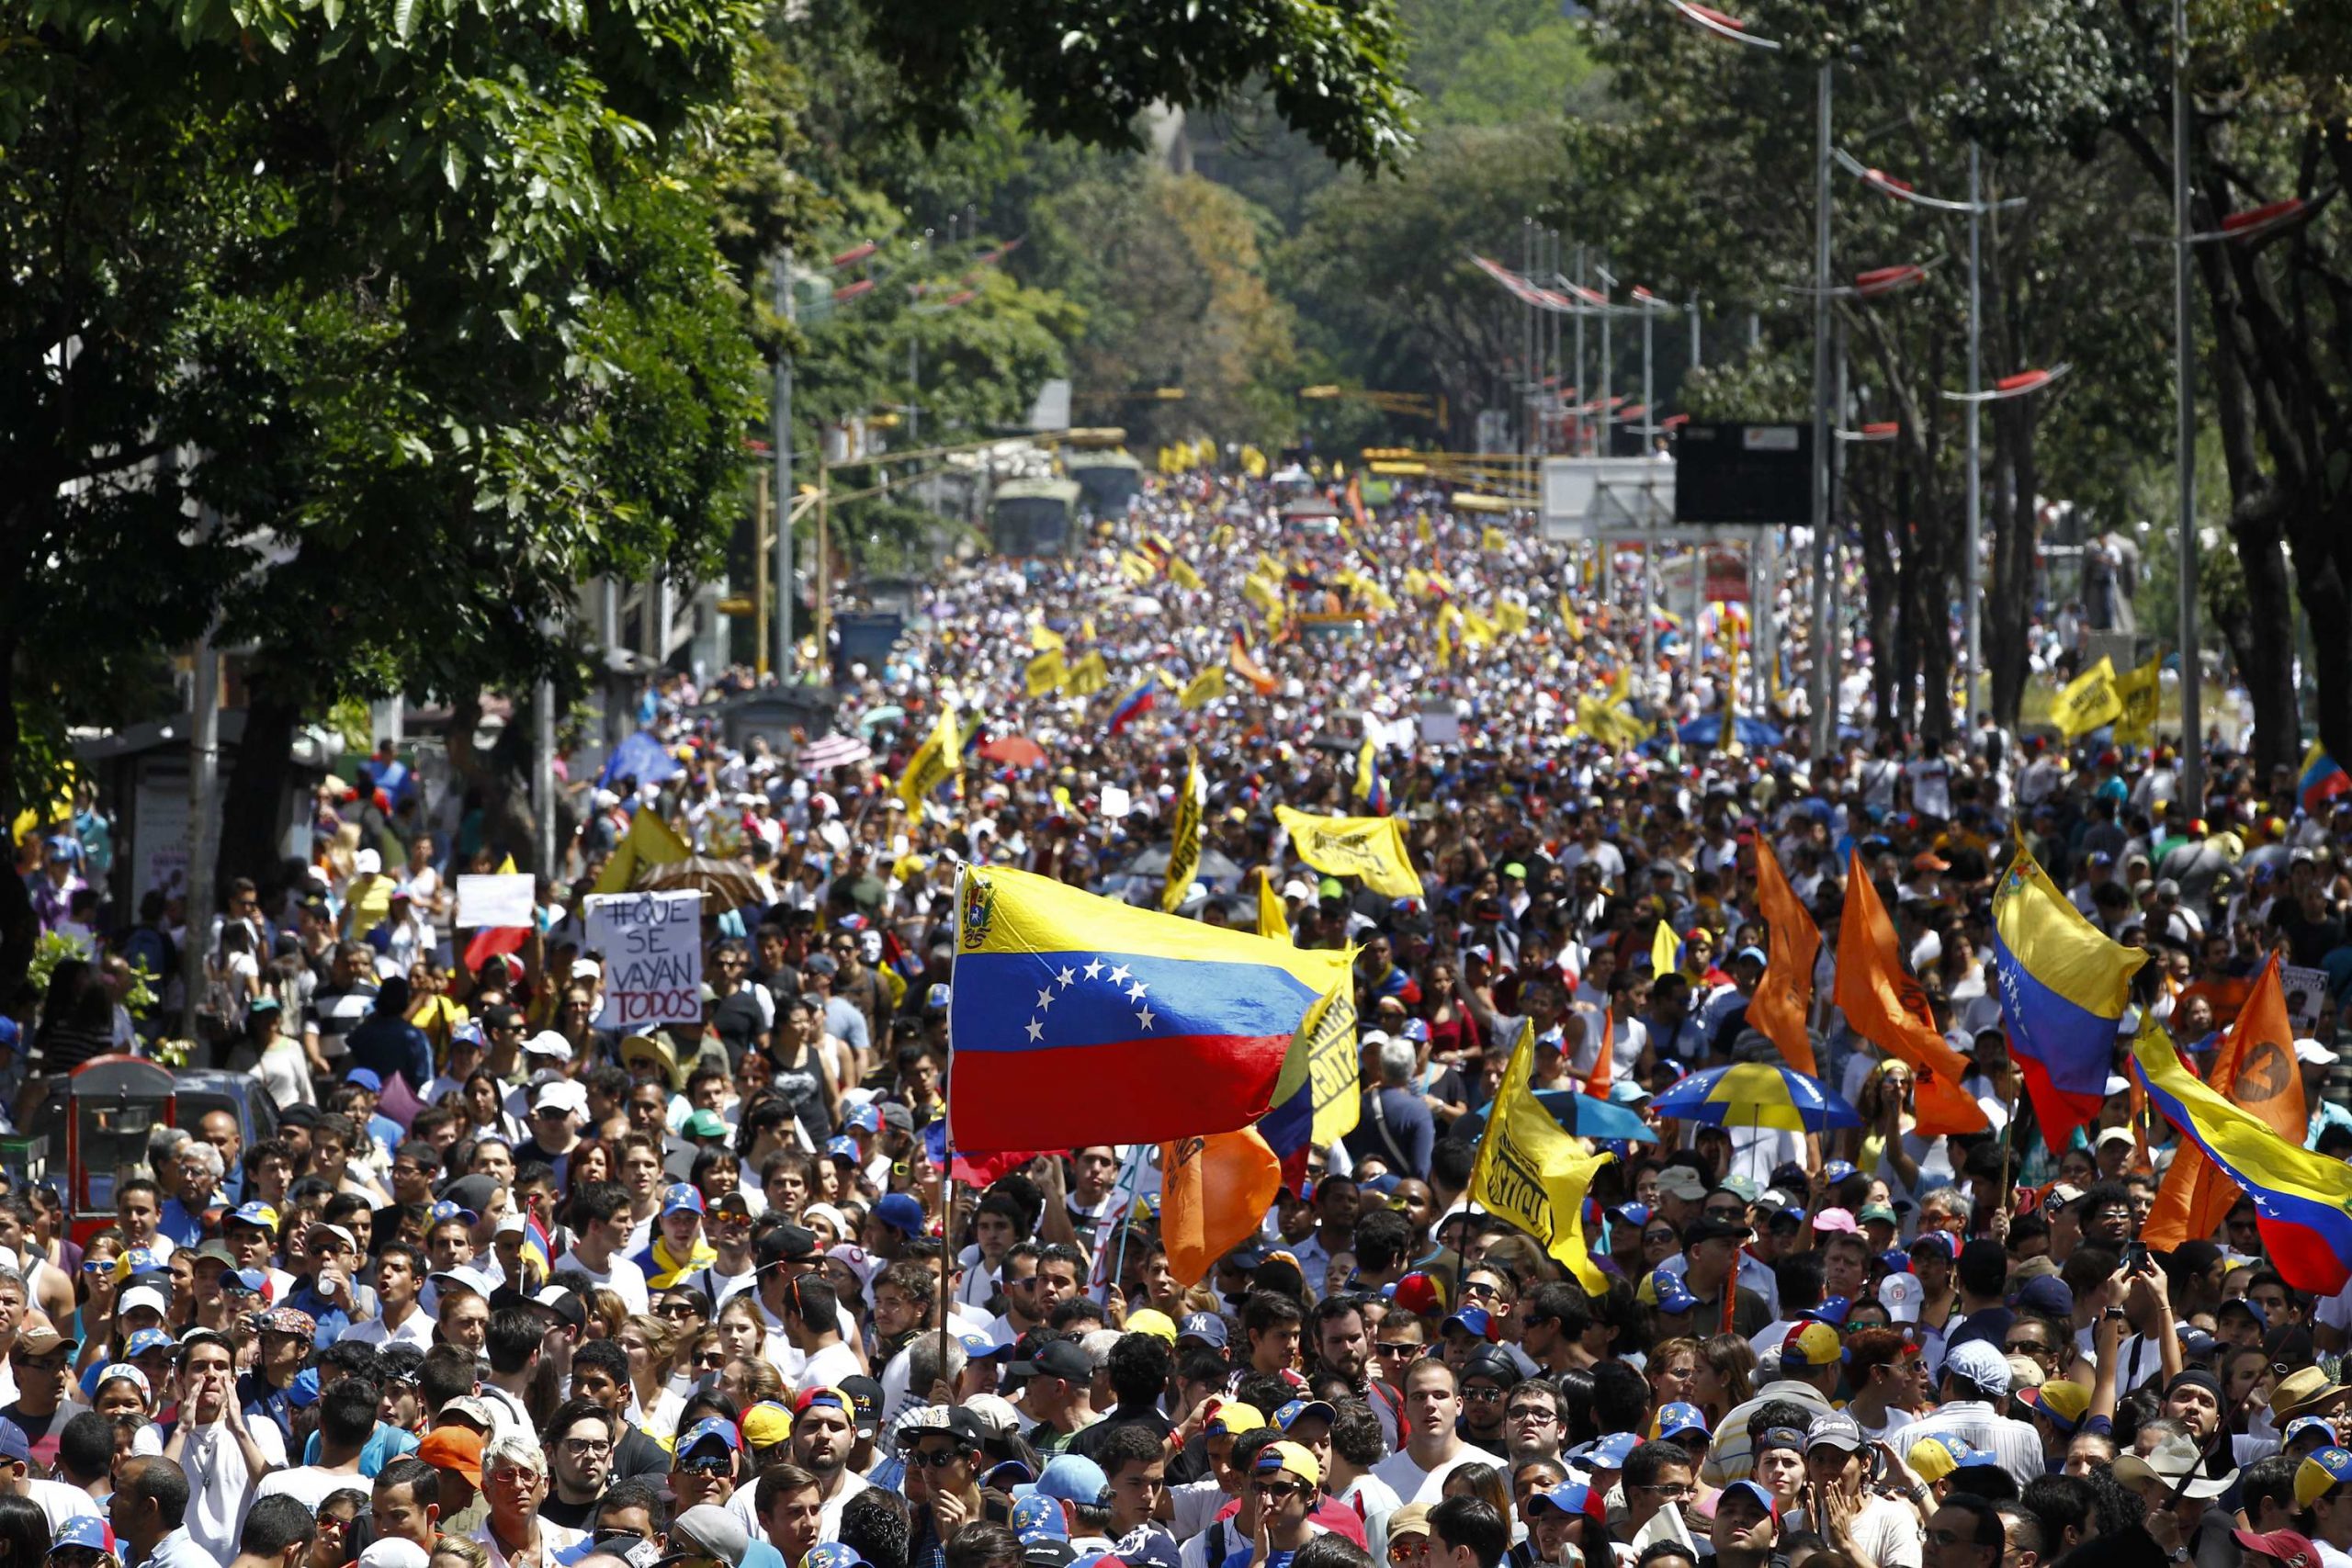 سيناريوهات عدة تنتظر فنزويلا: انتخابات أو حرب أهلية أو غزو أميركي